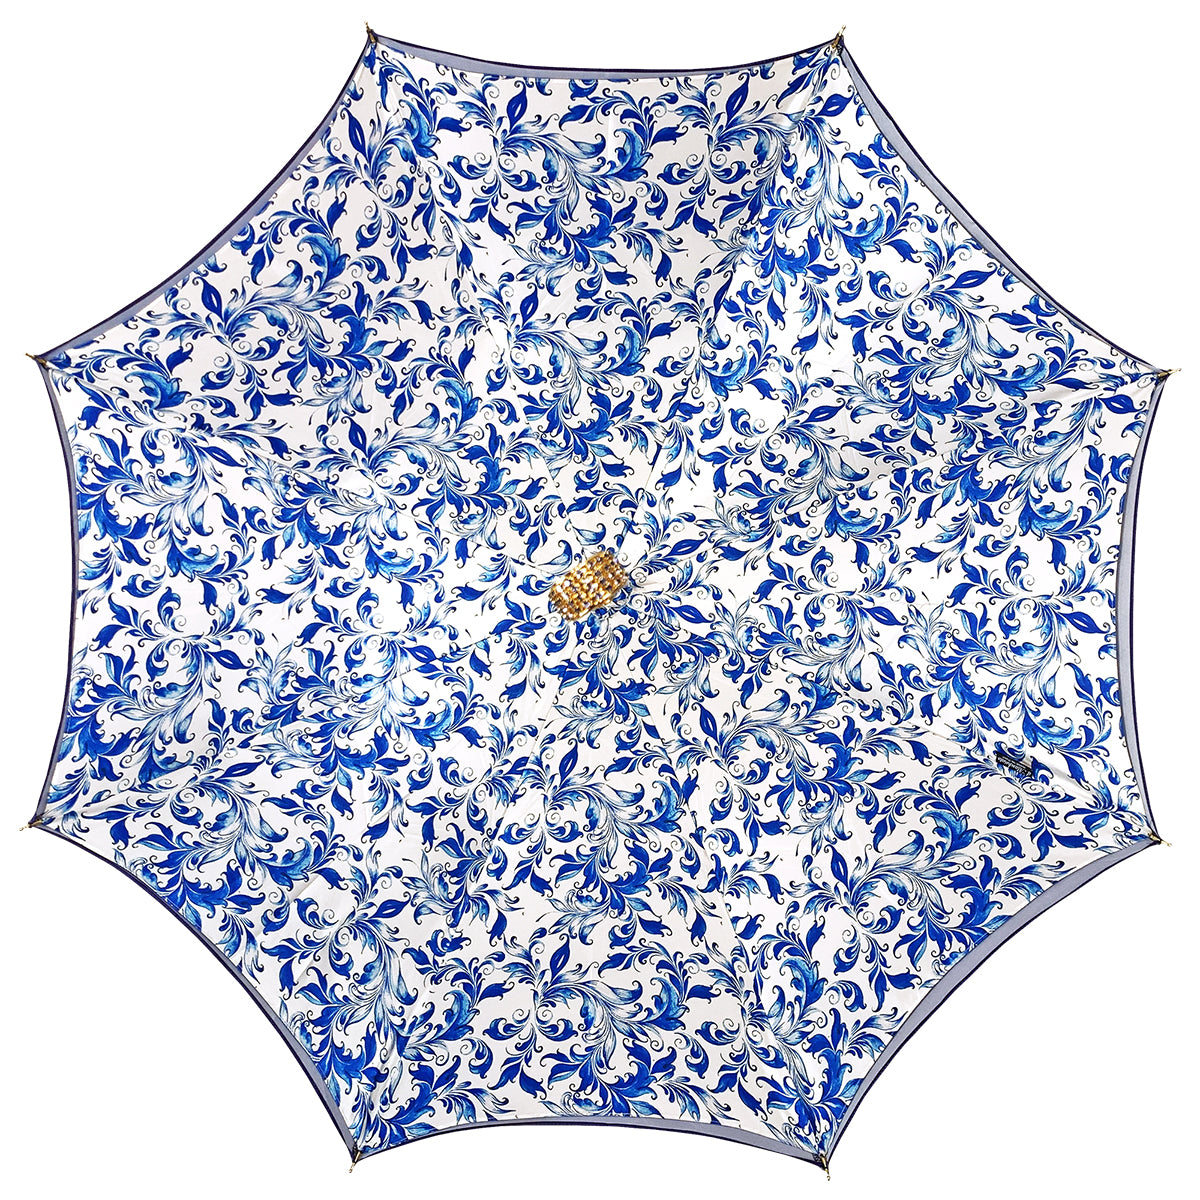 Fine and elegant light blue umbrella